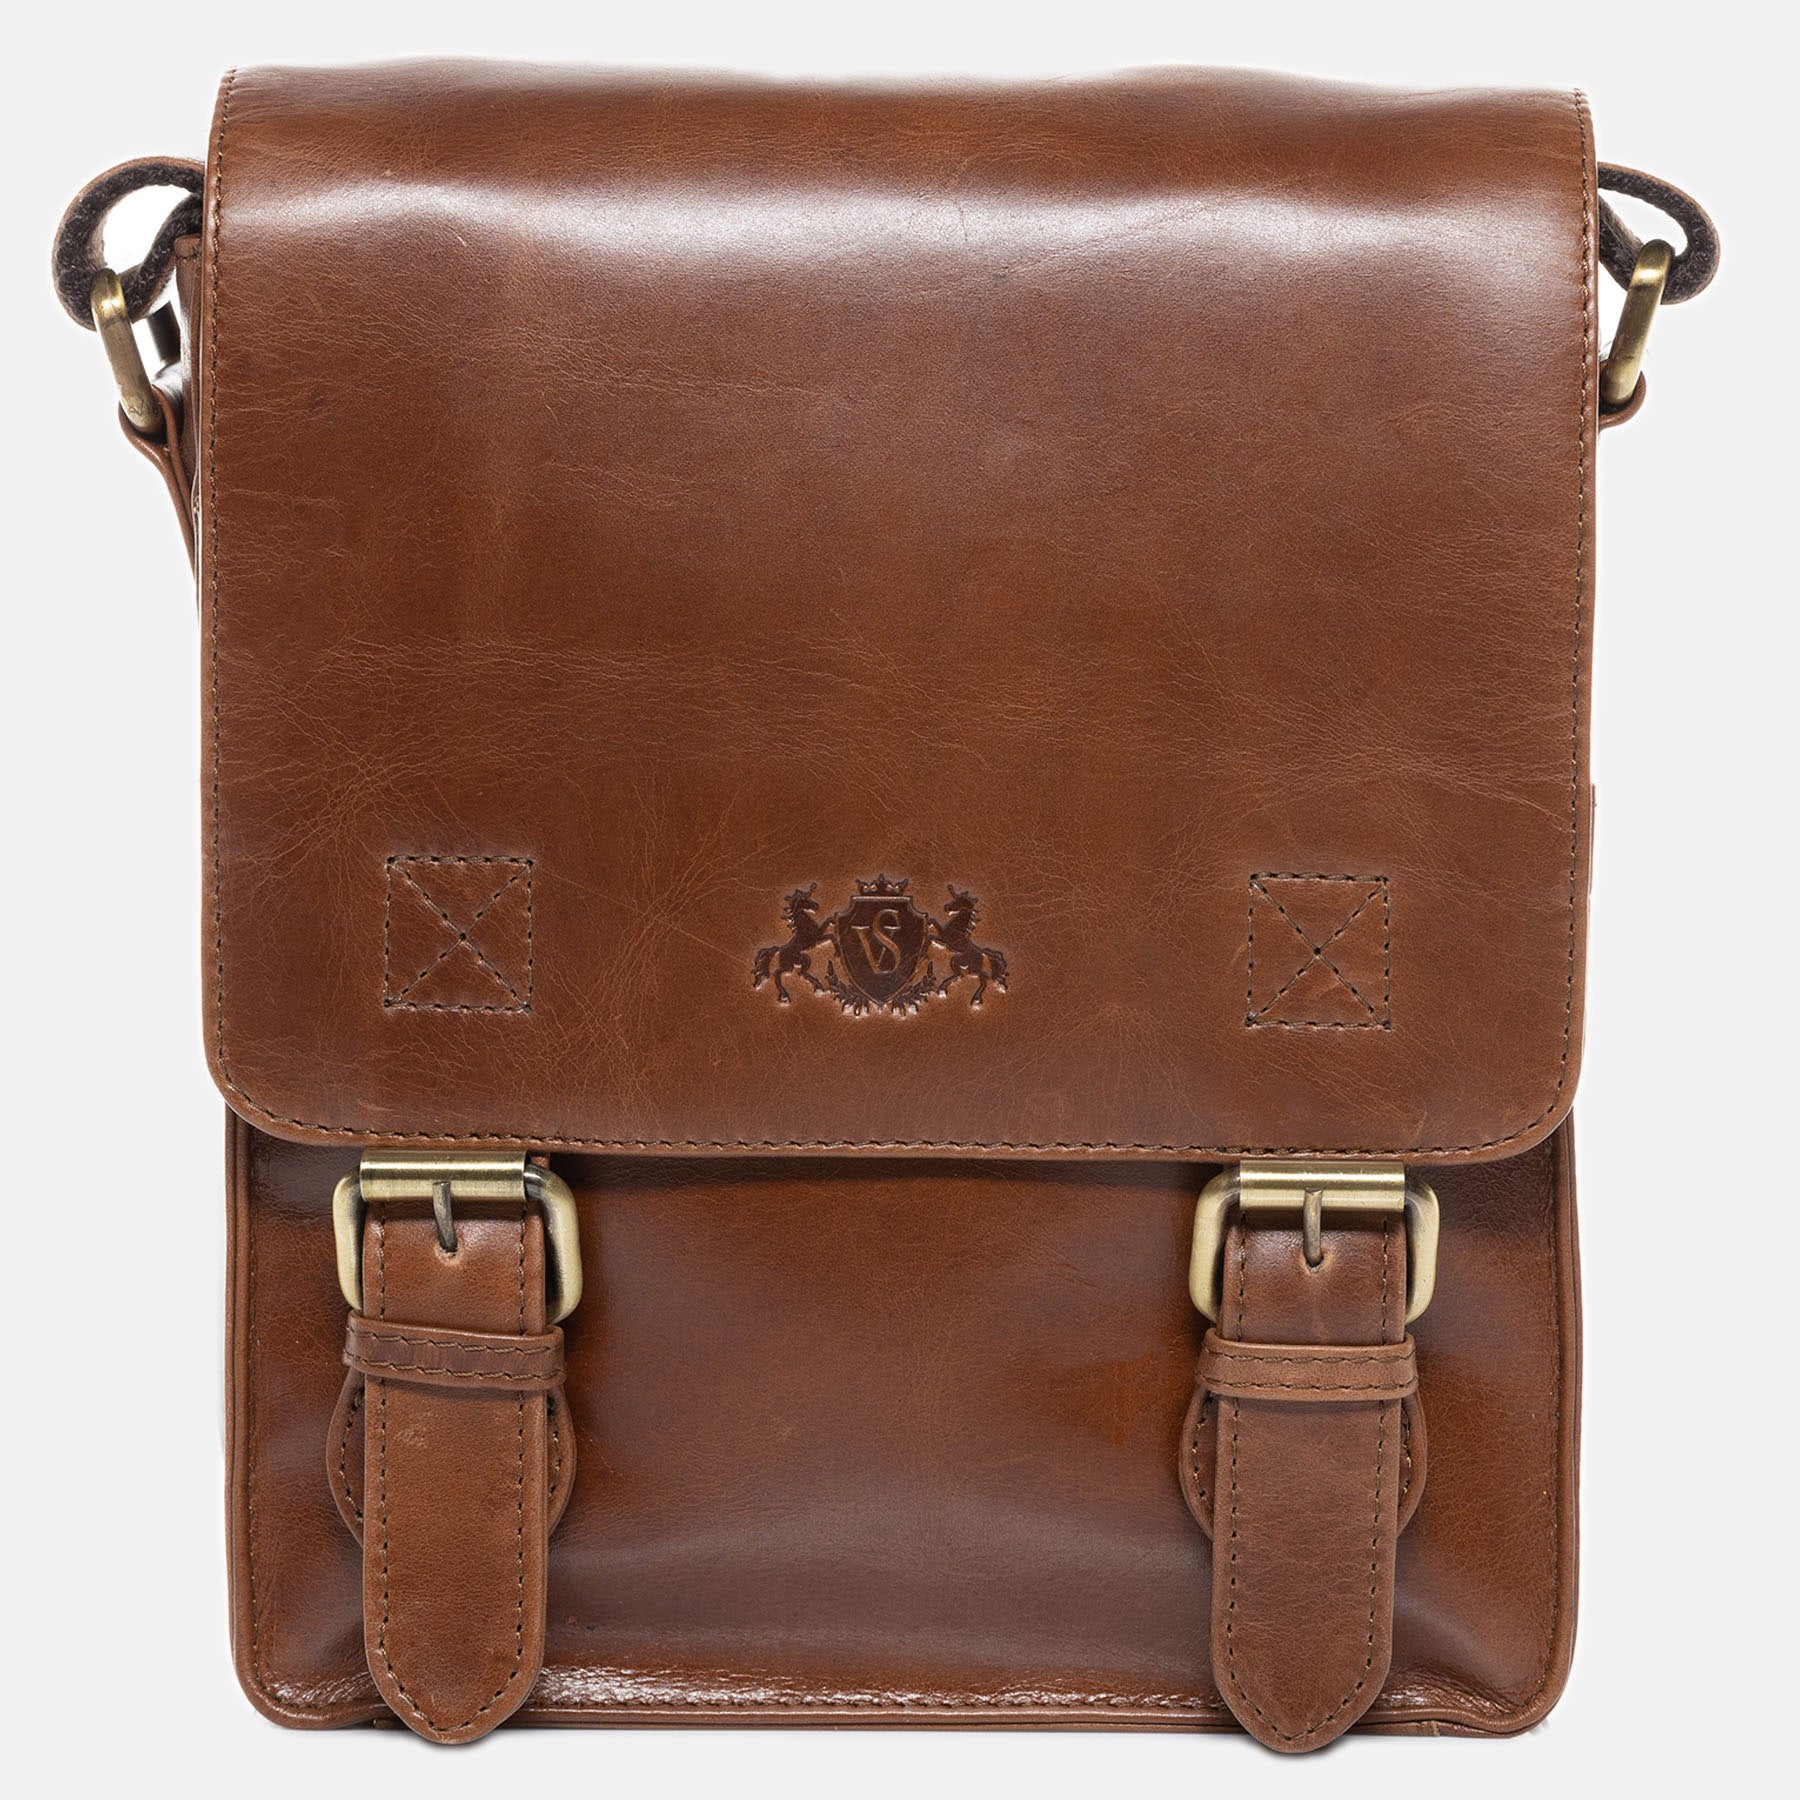 Shoulder bag HENRY natural leather light brown